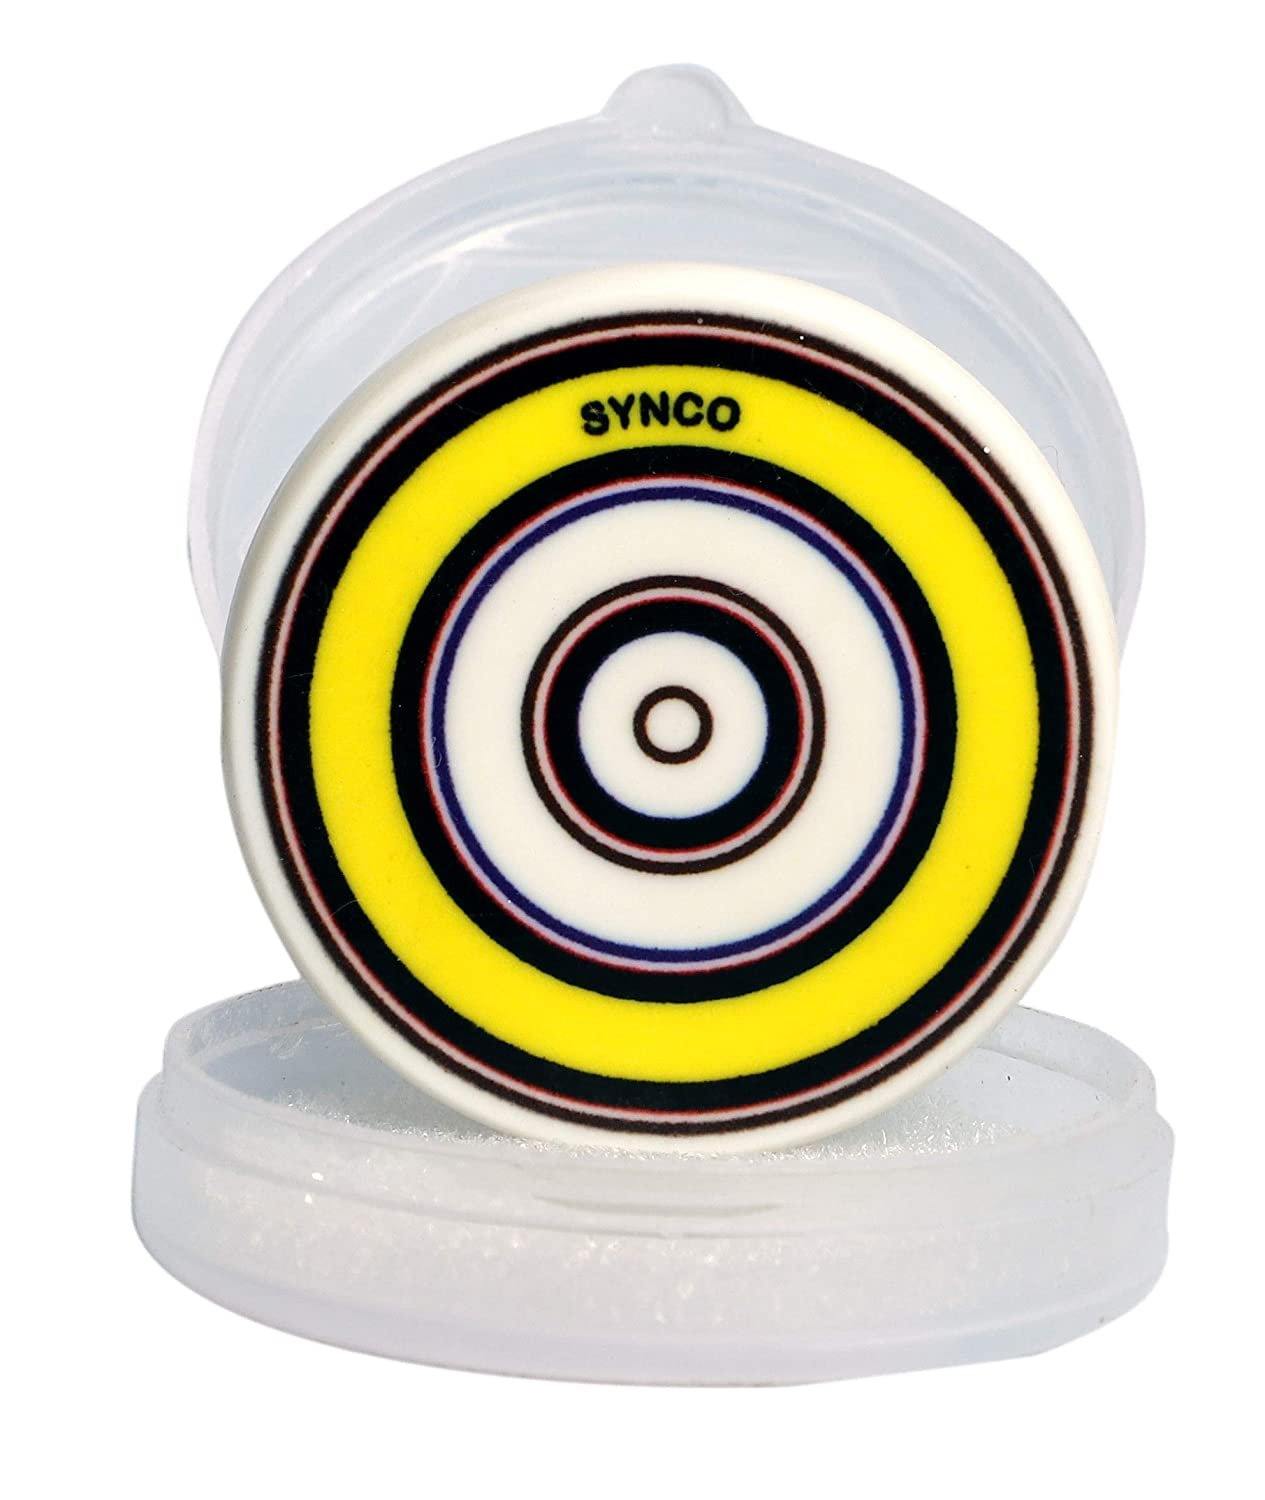 Synco Gem Carrom Striker (Assorted Colors) - Best Price online Prokicksports.com